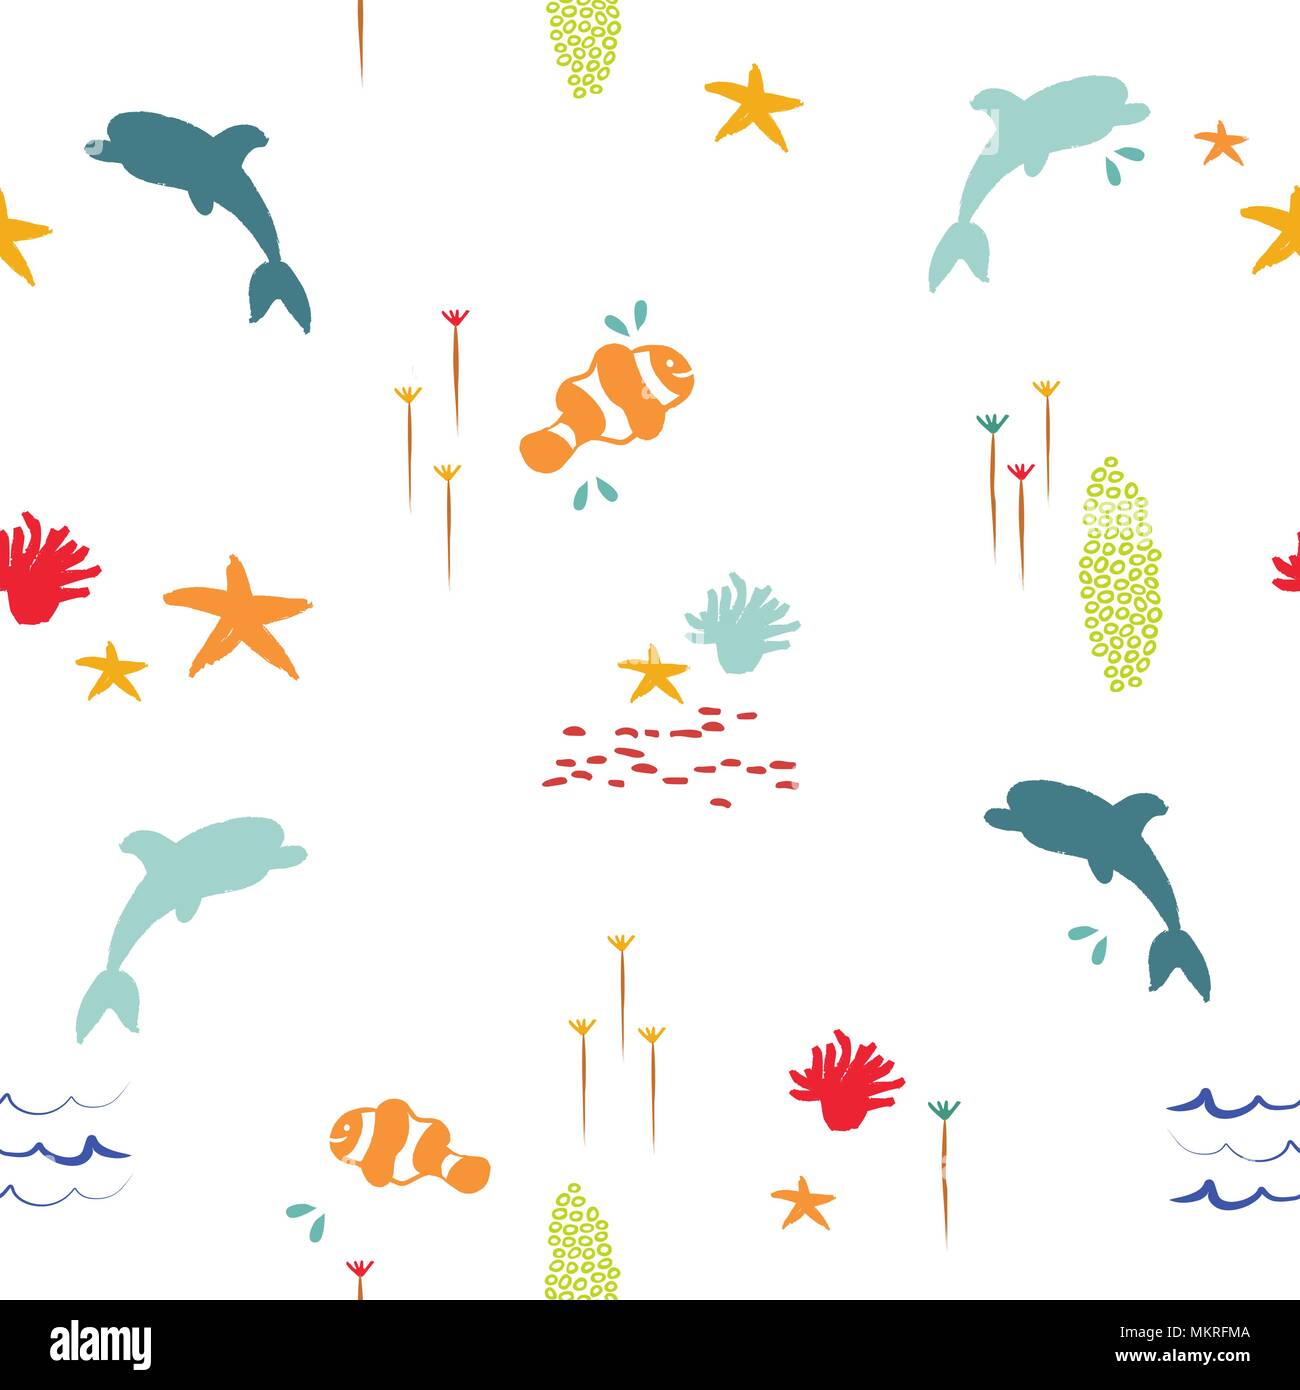 In estate la vita di mare seamless pattern con sfondo disegnato a mano le icone di animale di Dolphin, clownfish, corallo e stelle marine. EPS10 vettore. Illustrazione Vettoriale